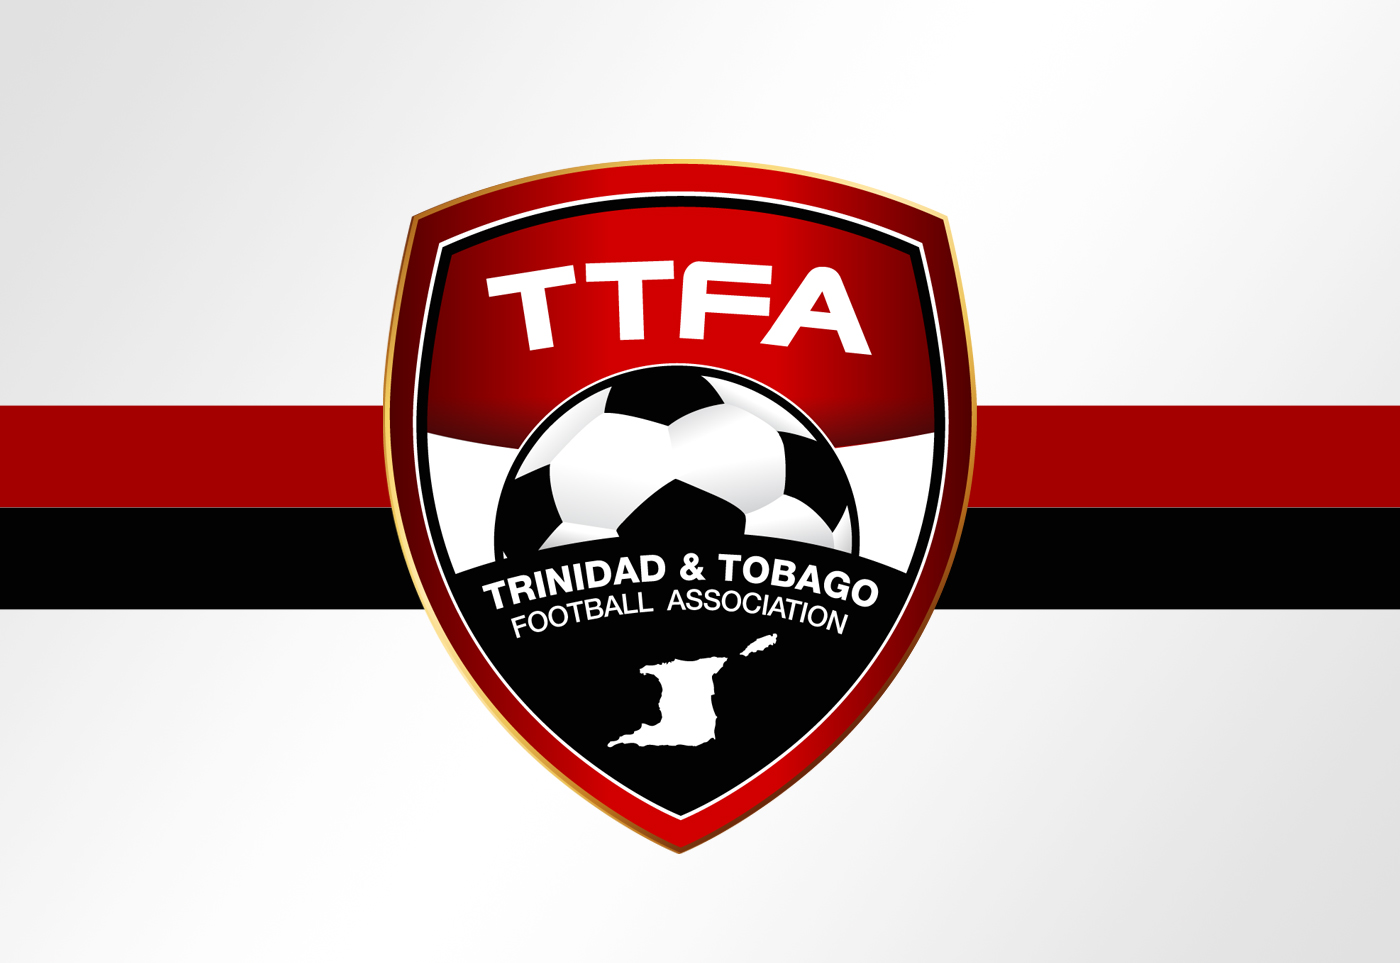 TTFA makes $1.6m from womenÂ’s match.